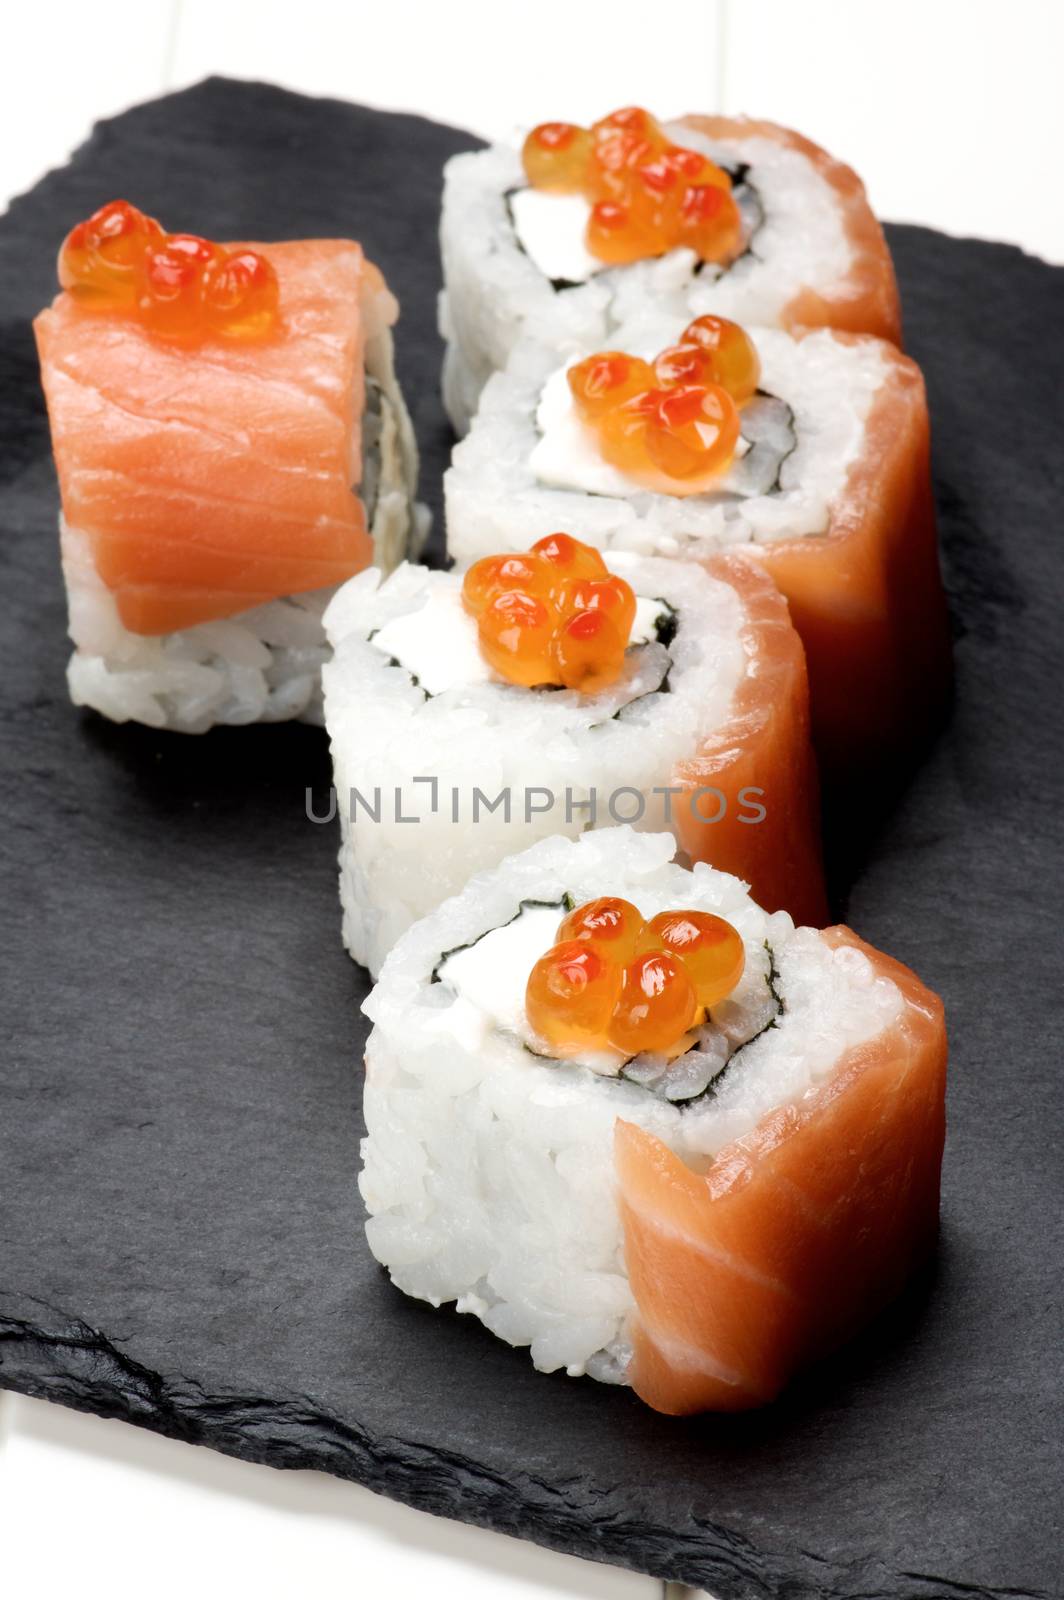 Salmon and Caviar Sushi by zhekos